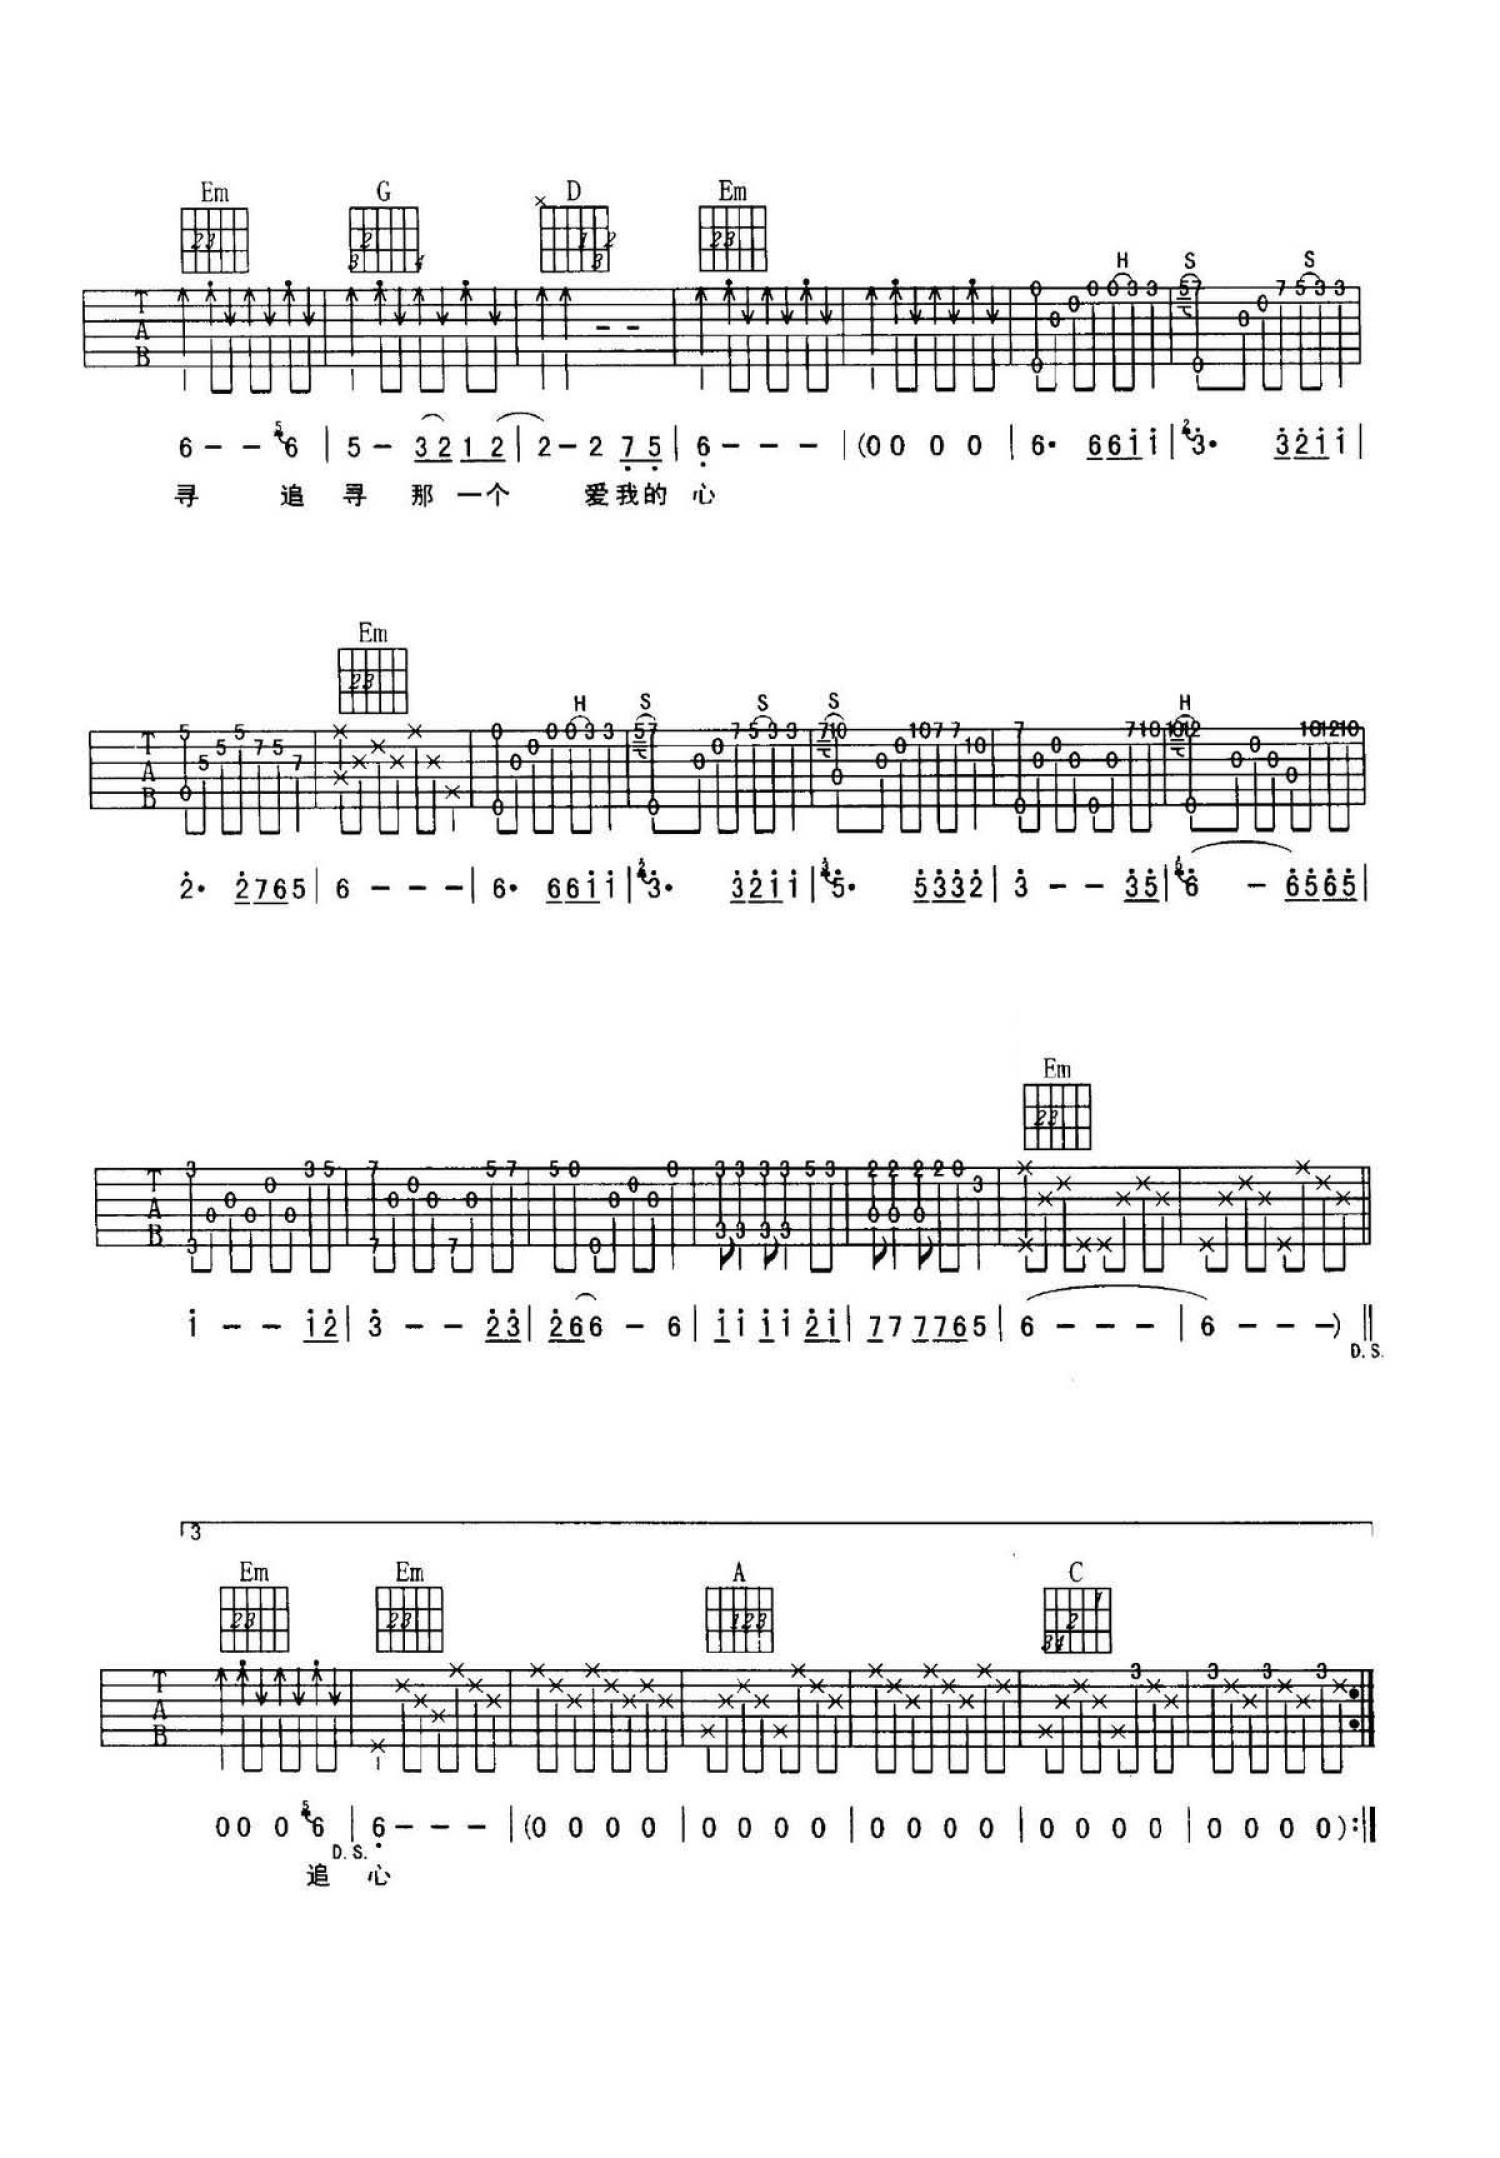 有大横按版《三月里的小雨》吉他谱简谱C调_零基础教学和弦_边教边唱完整版 - 易谱库